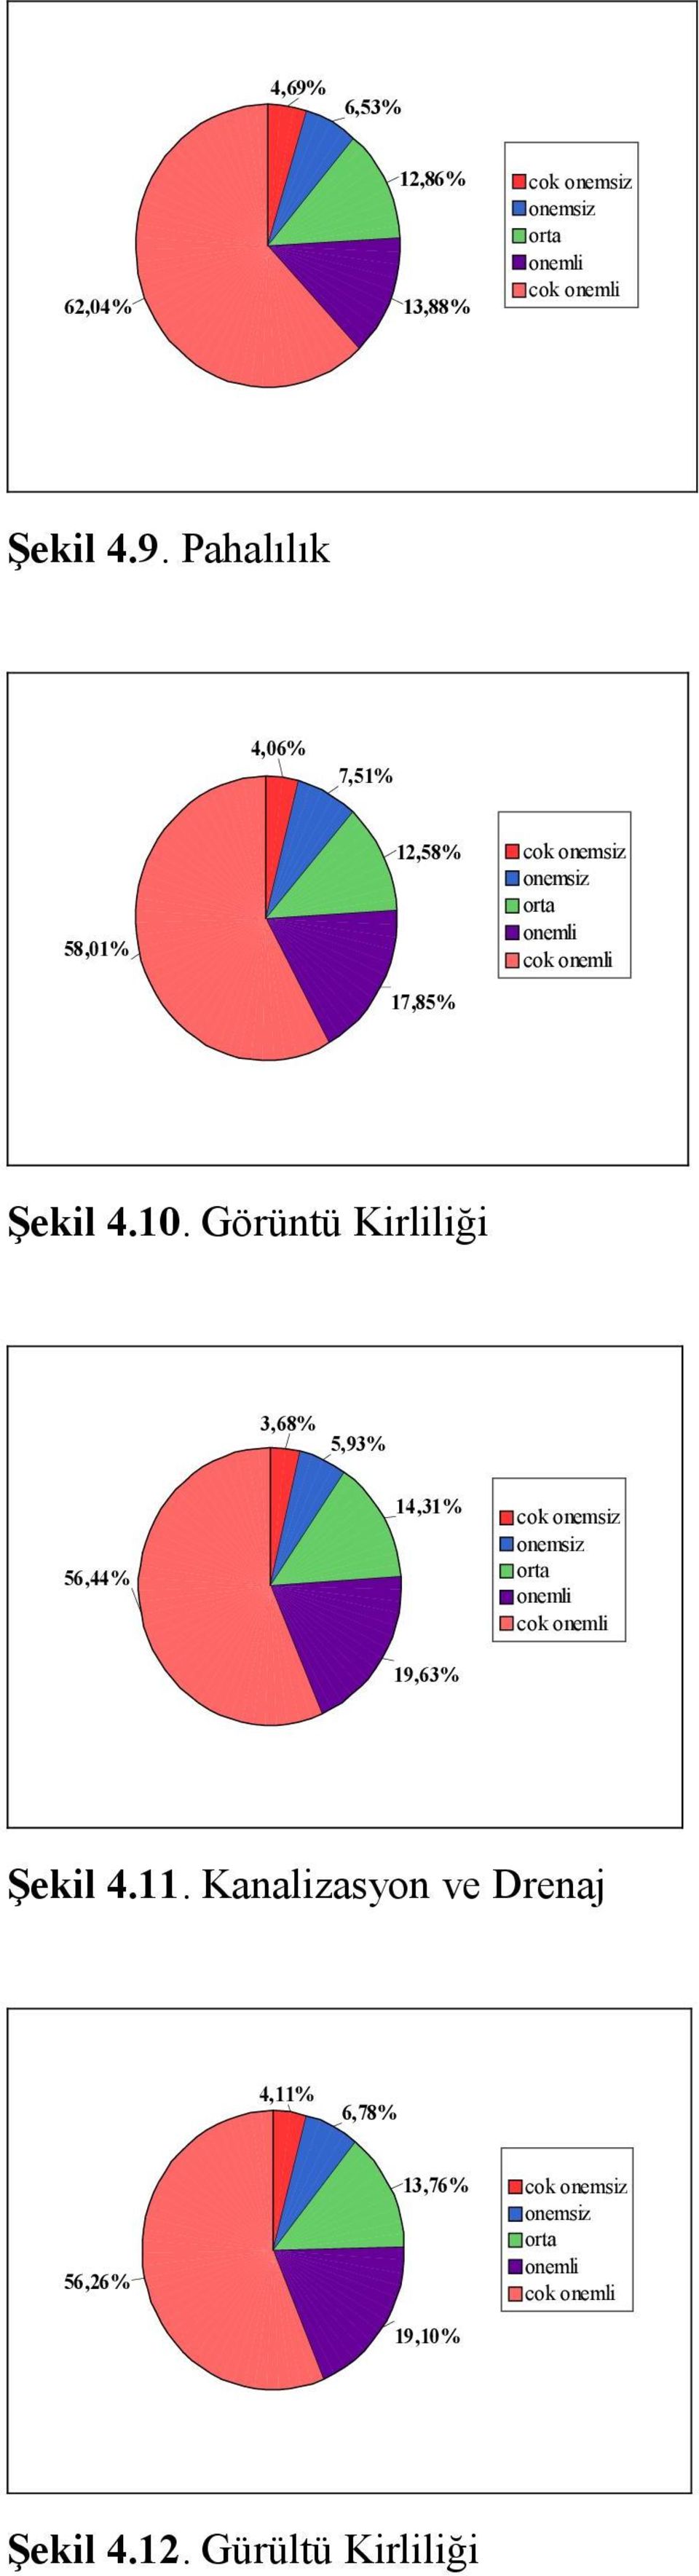 4.11. Kanalizasyon ve Drenaj 4,11% 6,78% 56,26% 13,76% 19,10% cok